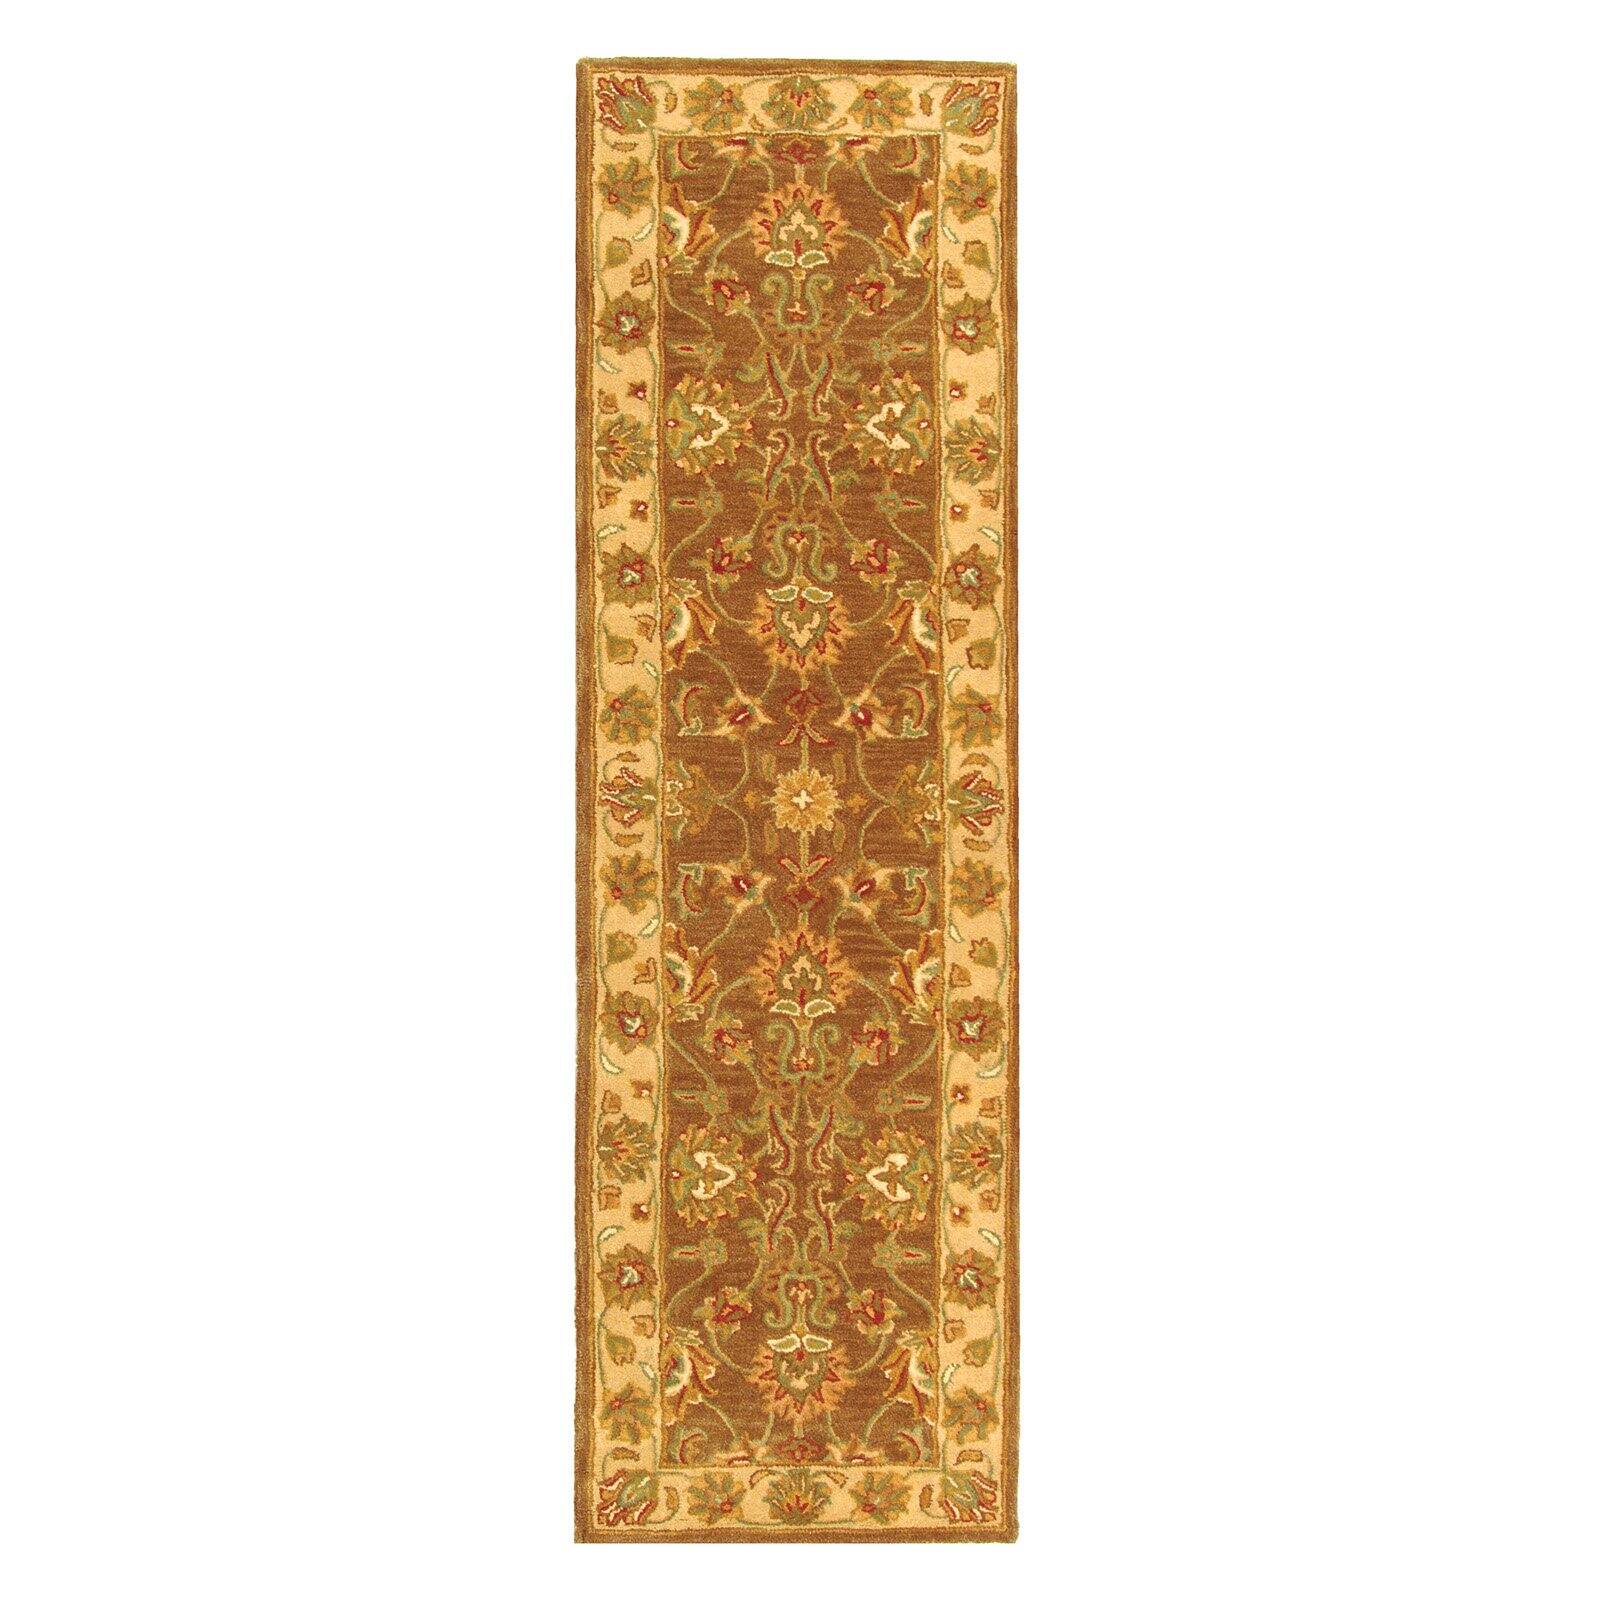 SAFAVIEH Heritage Regis Traditional Wool Runner Rug, Brown/Ivory, 2'3" x 10' - image 3 of 9